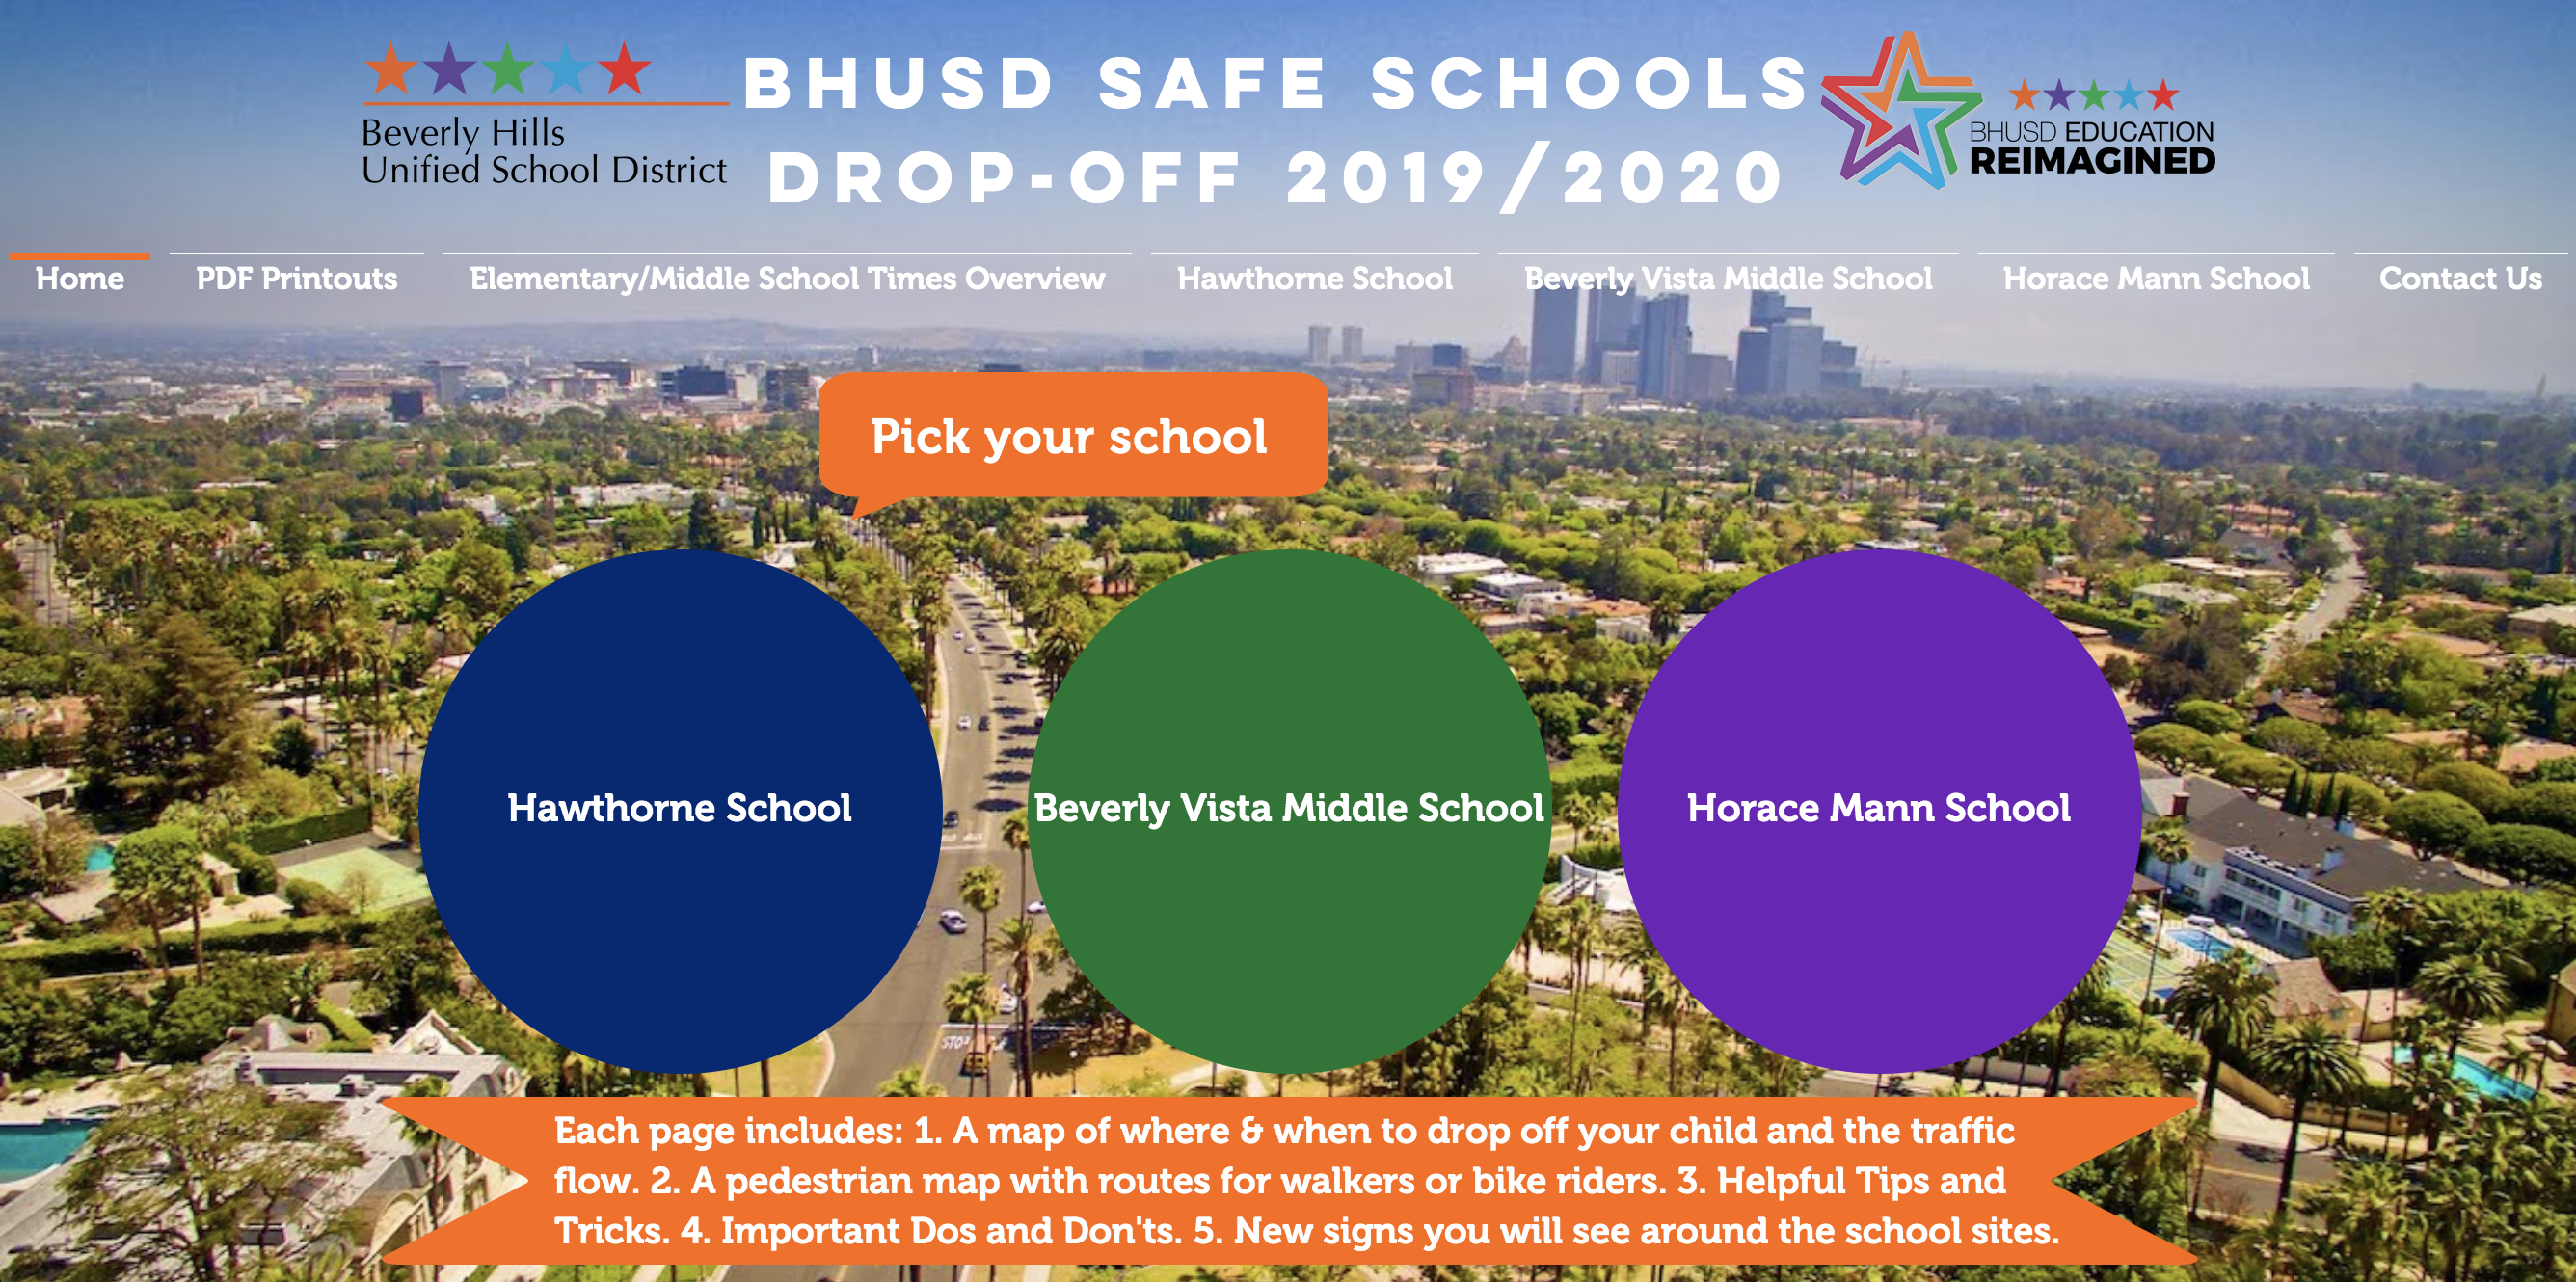 BHUSD Safe Schools Website